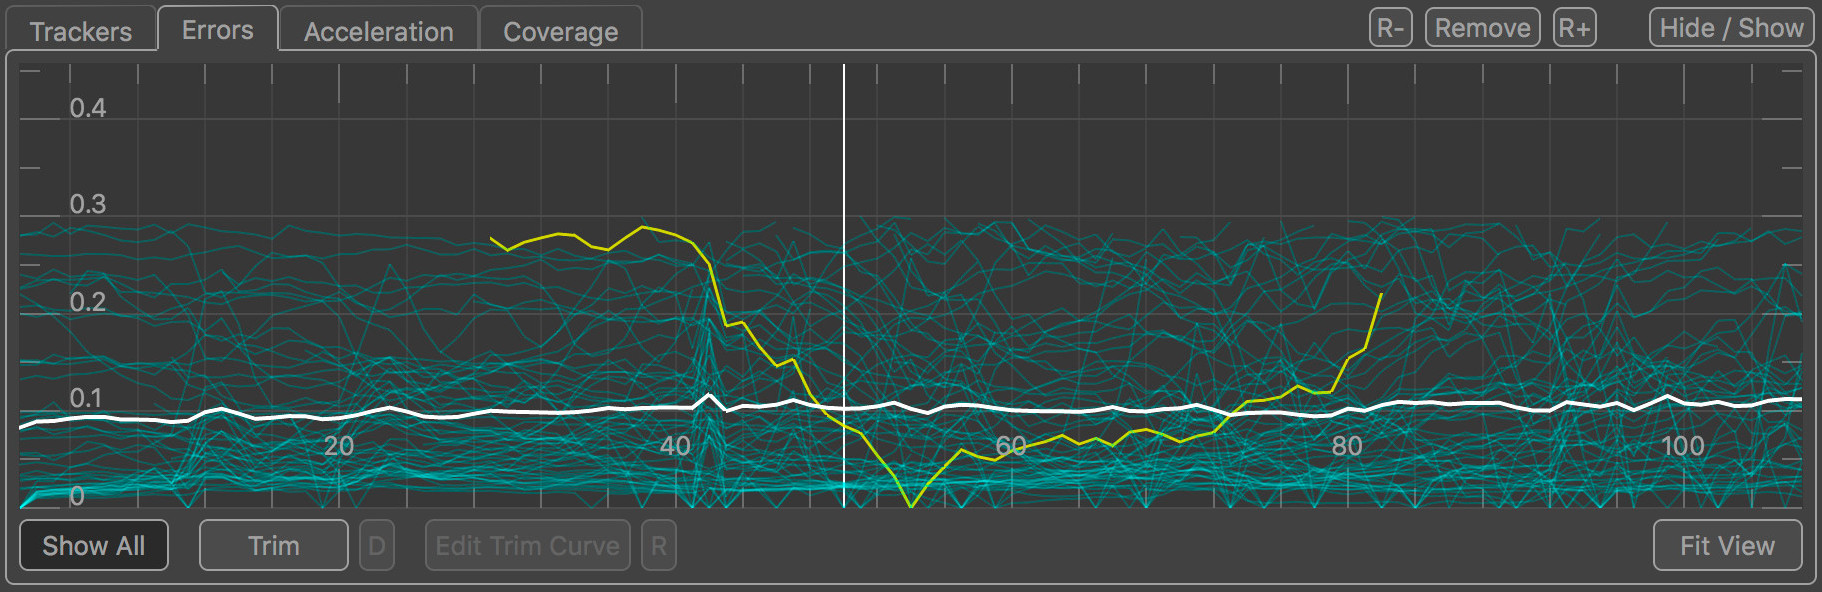 The errors graph in Auto Track